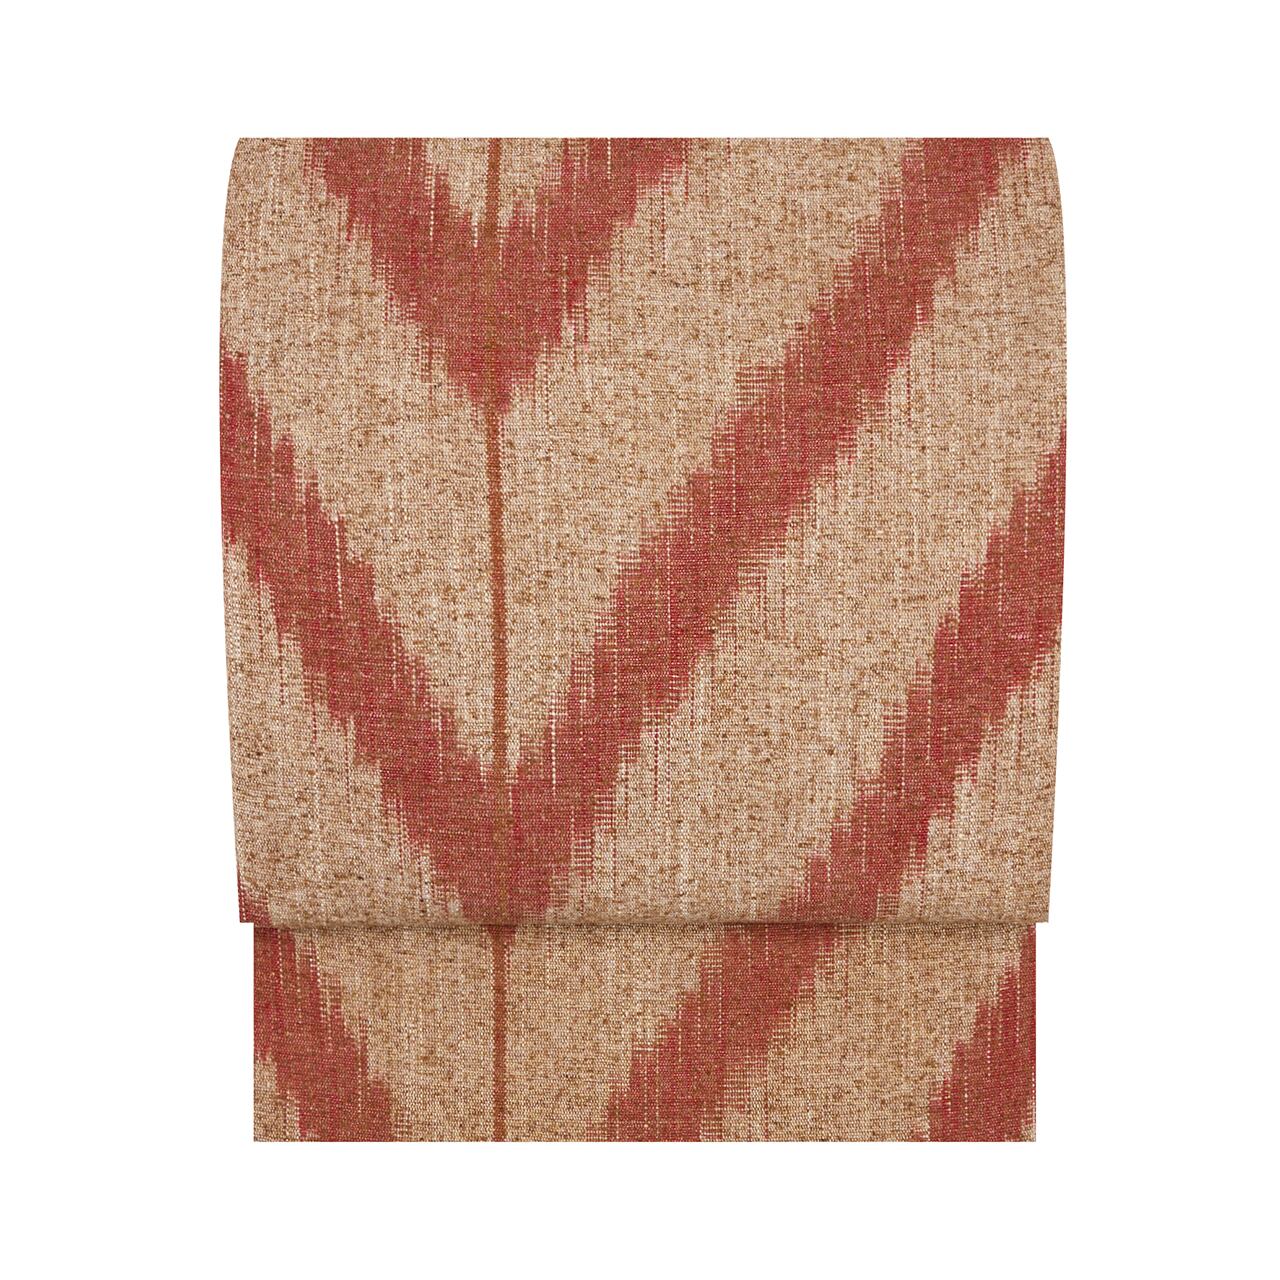 出羽の織座　日本伝統織物摩耶ぜんまい織　八寸名古屋帯 【未着用品】